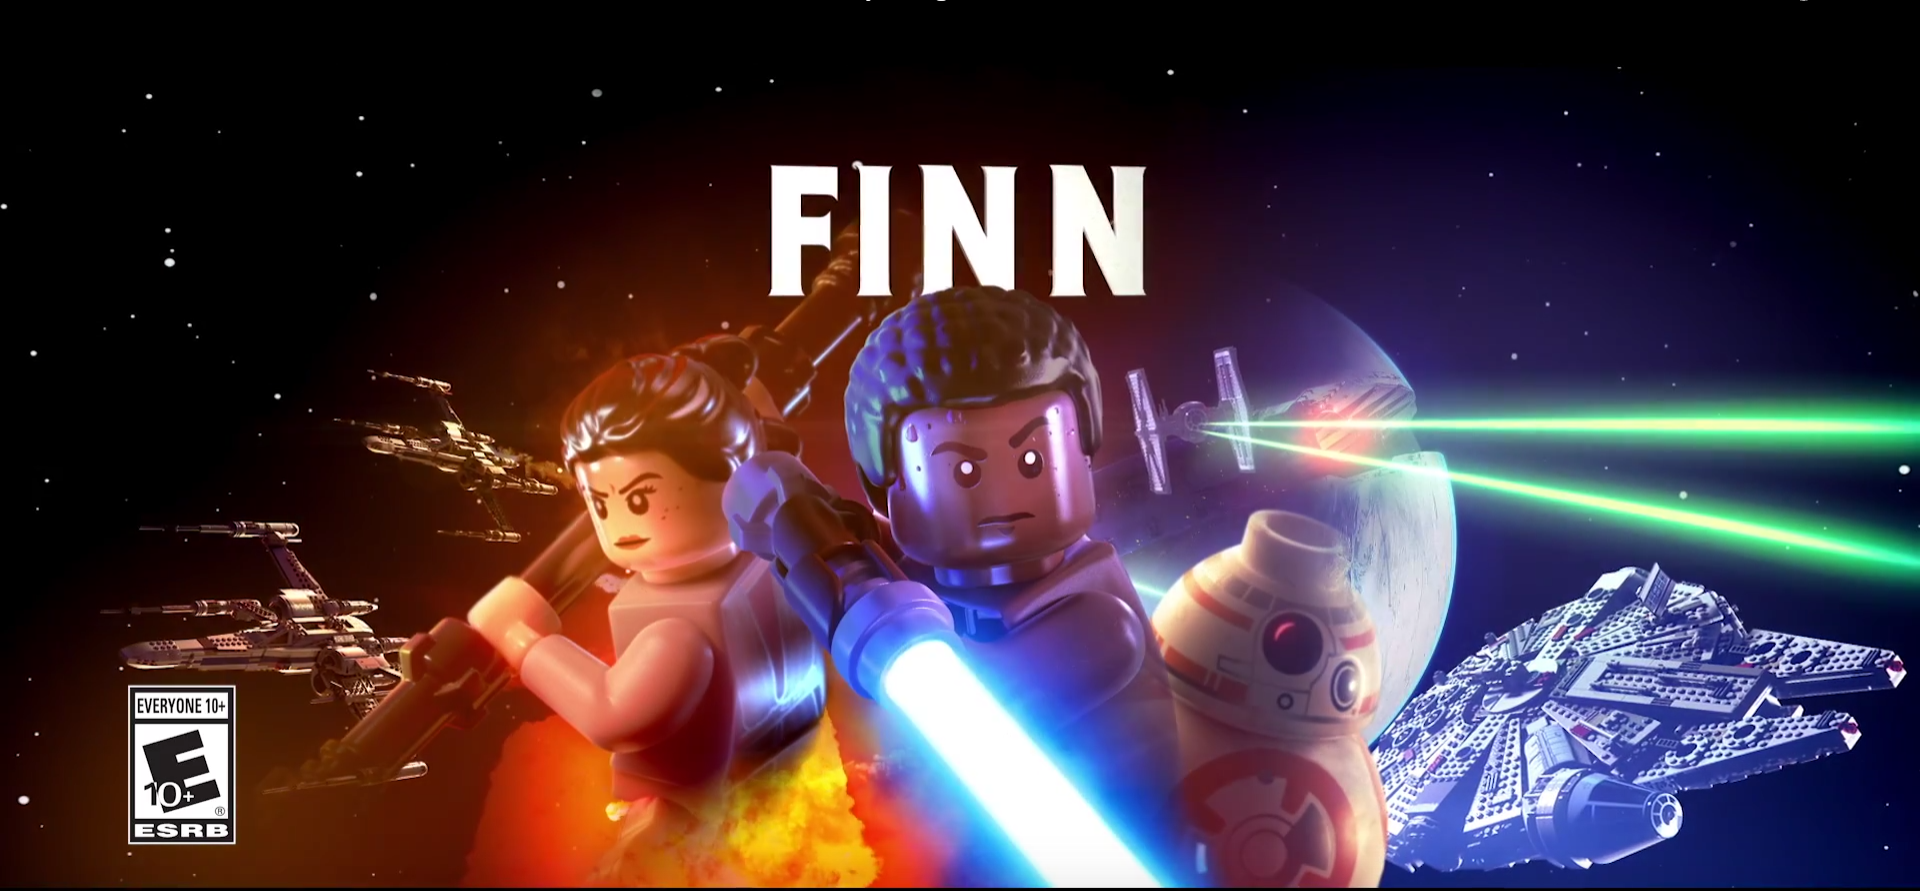 Finn se presenta en un nuevo tráiler de Lego Star Wars: El despertar de la fuerza